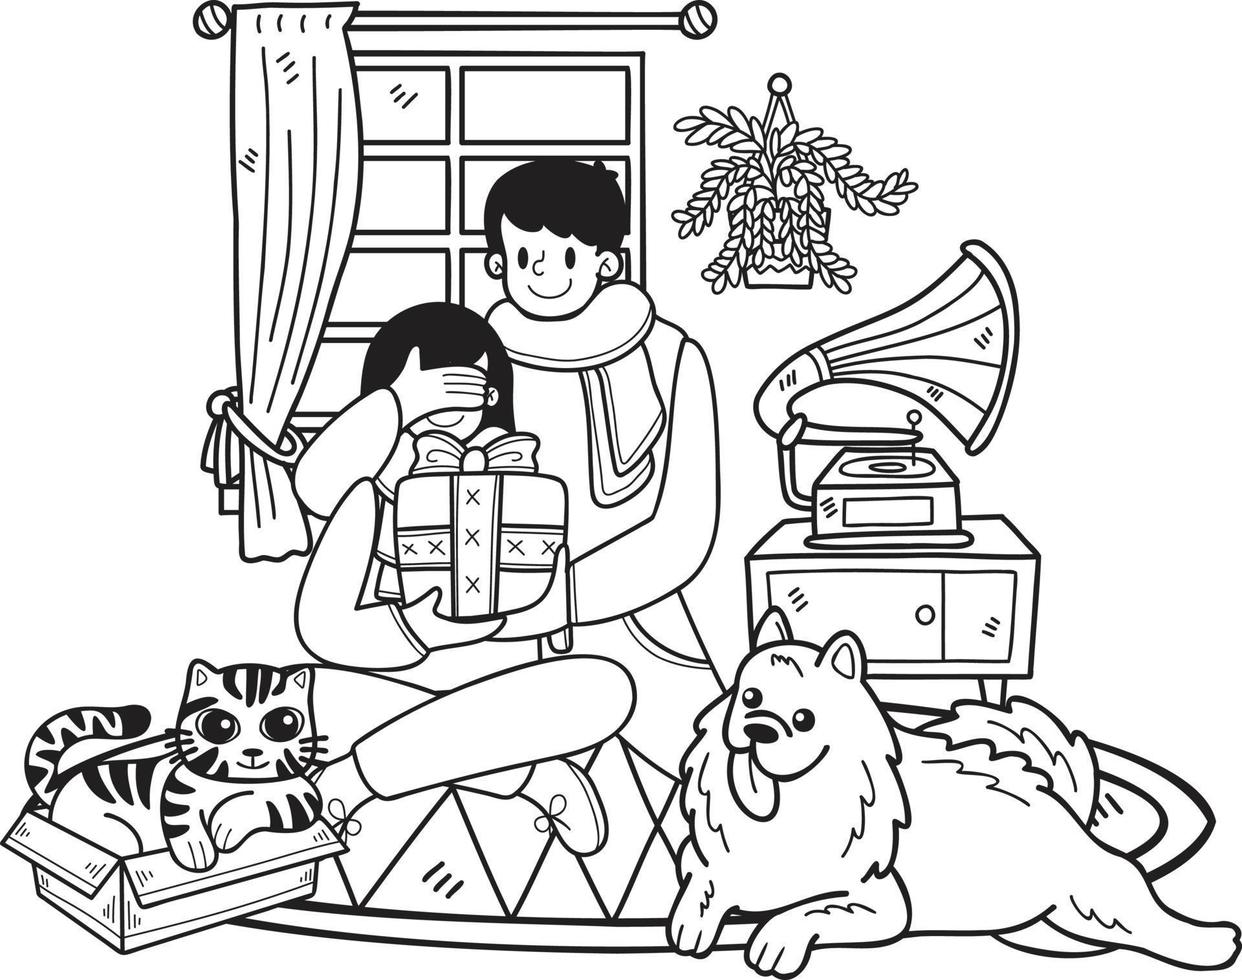 des hommes dessinés à la main donnent des cadeaux aux femmes avec des chiens et des chats illustration dans un style doodle vecteur